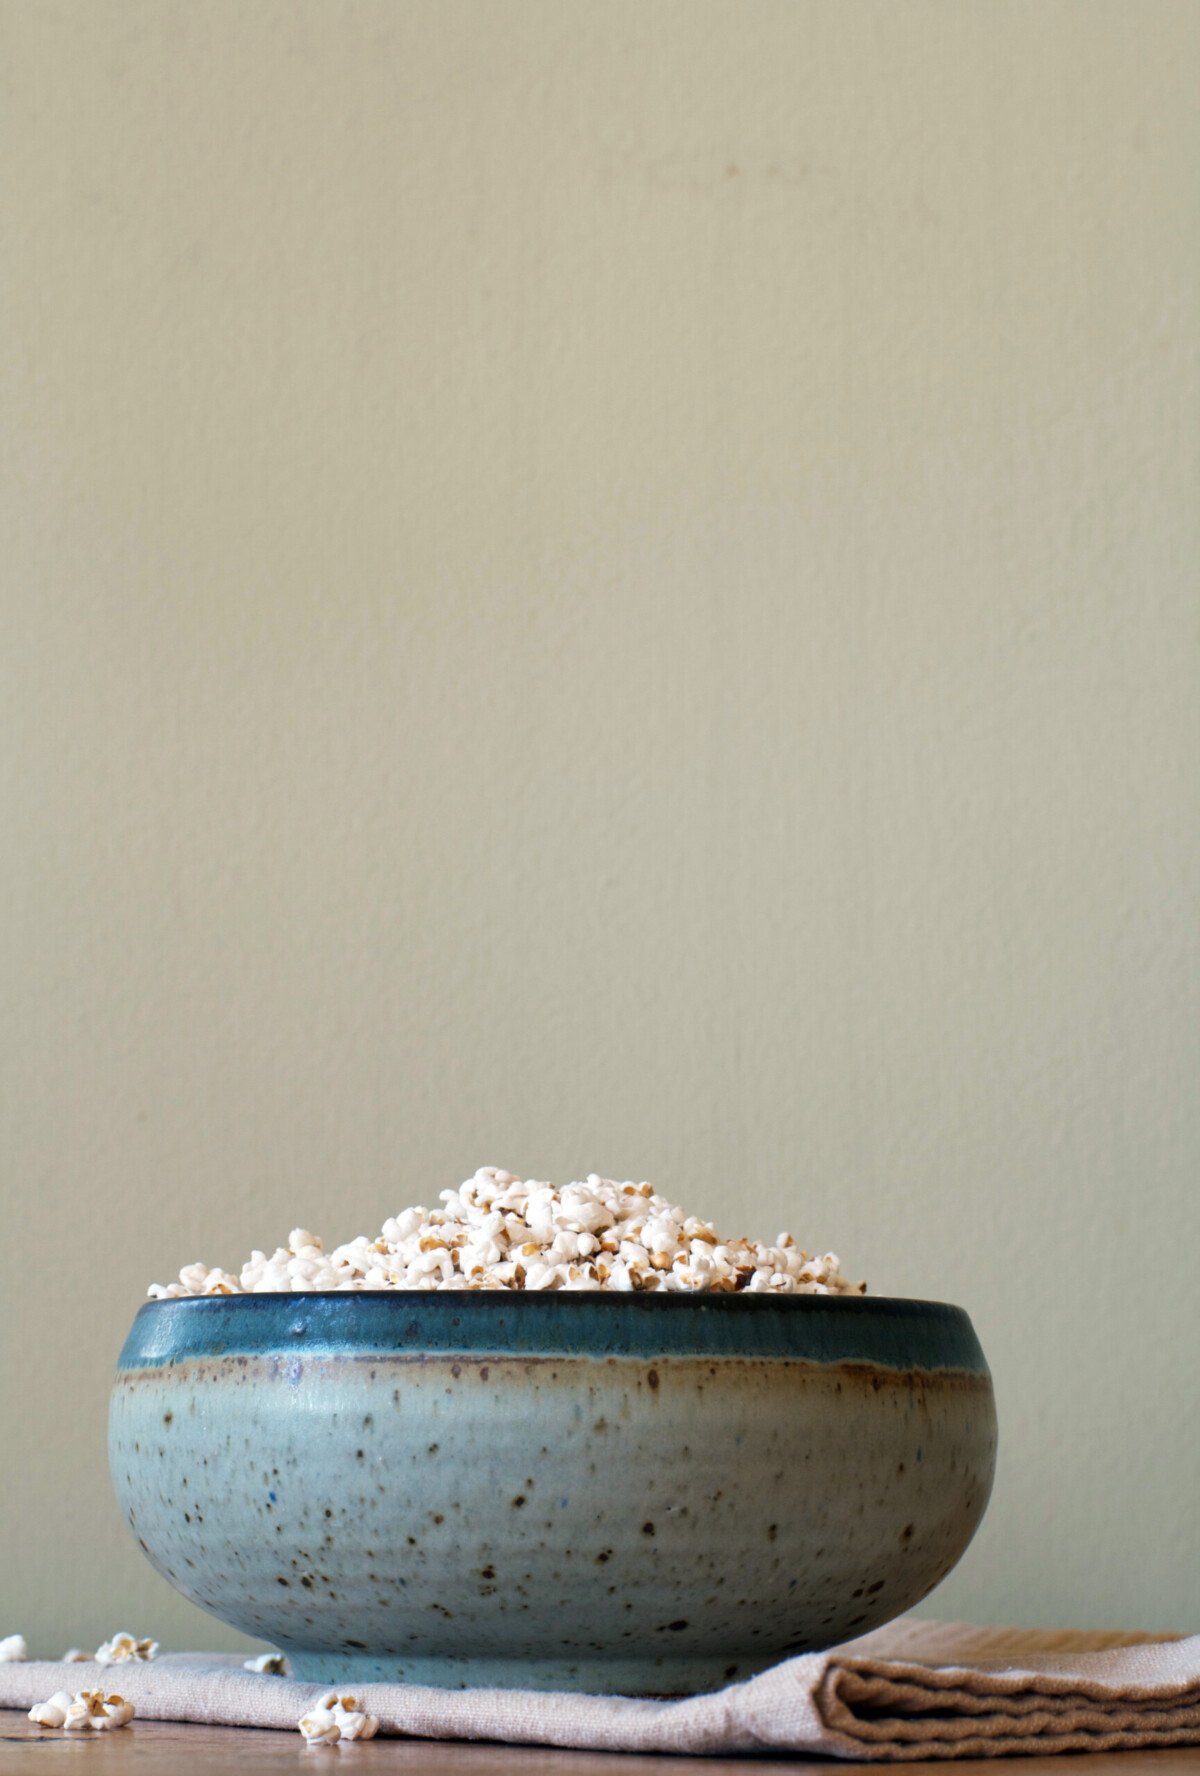 Spiced Sorghum “Popcorn” | Zestful Kitchen